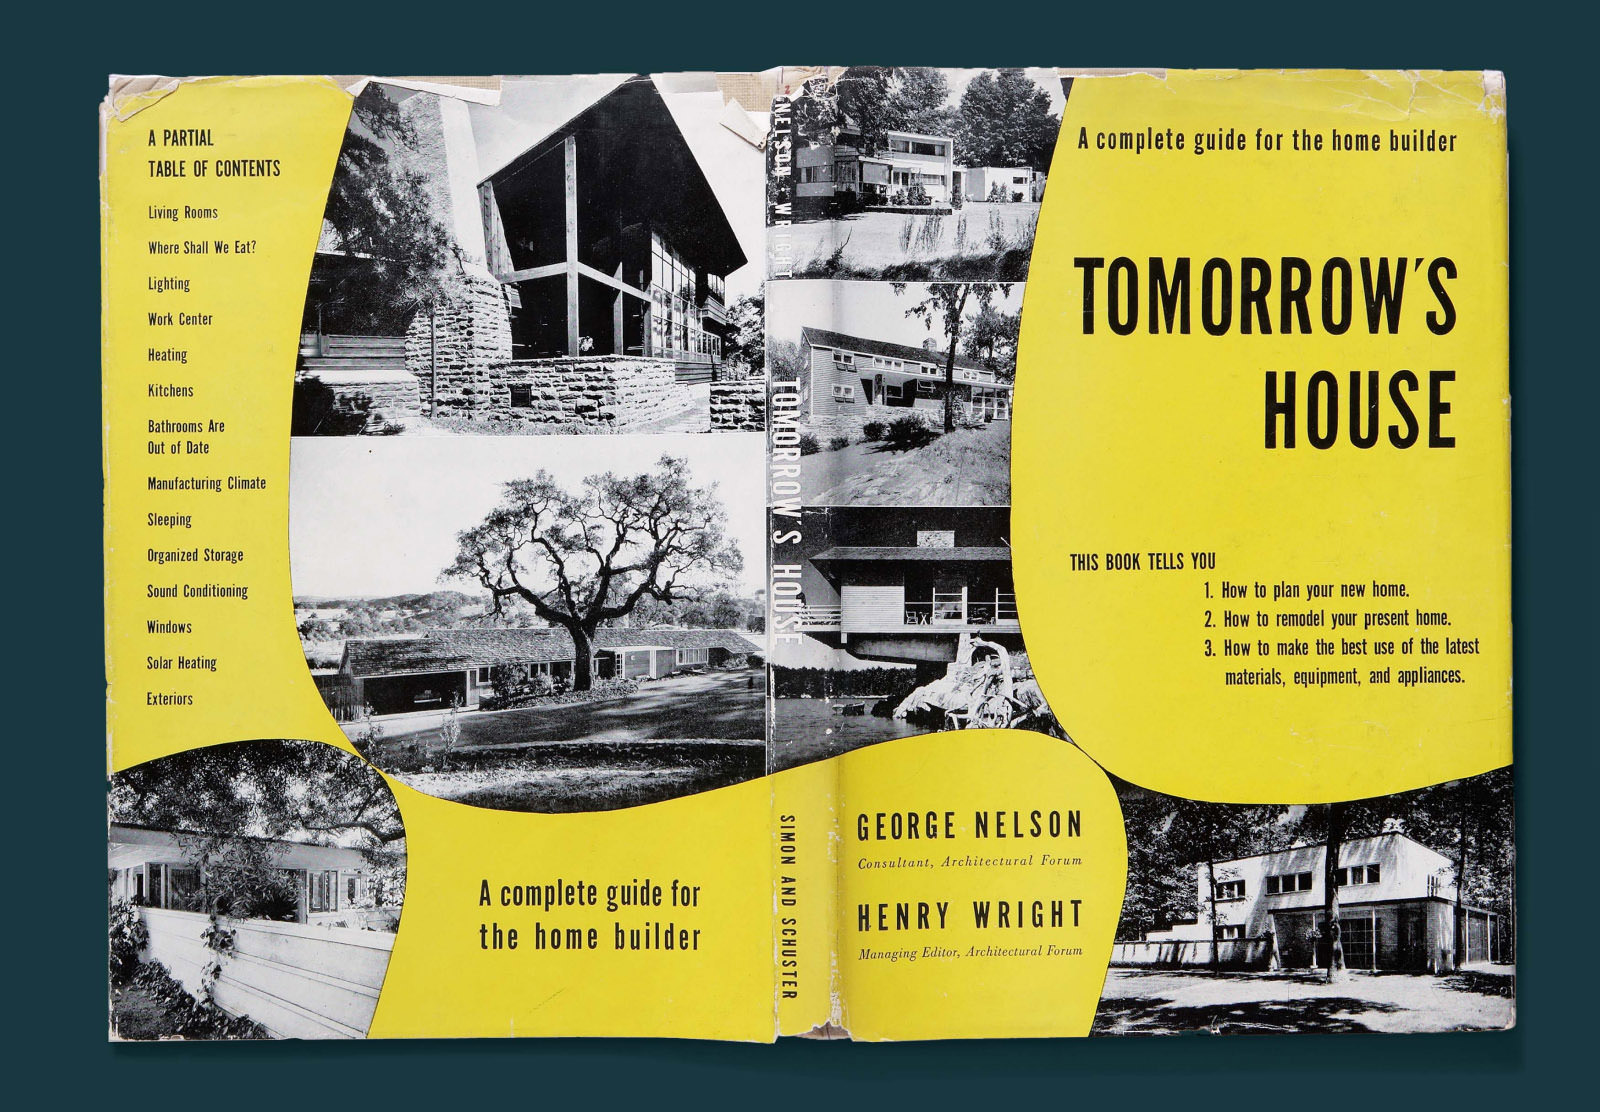 Tapa y contratapa de Tomorrow’s House, donde el título, el autor y el índice aparecen en letra negra sobre un fondo en amarillo irregular que destaca fotografías en blanco y negro de viviendas modernas.